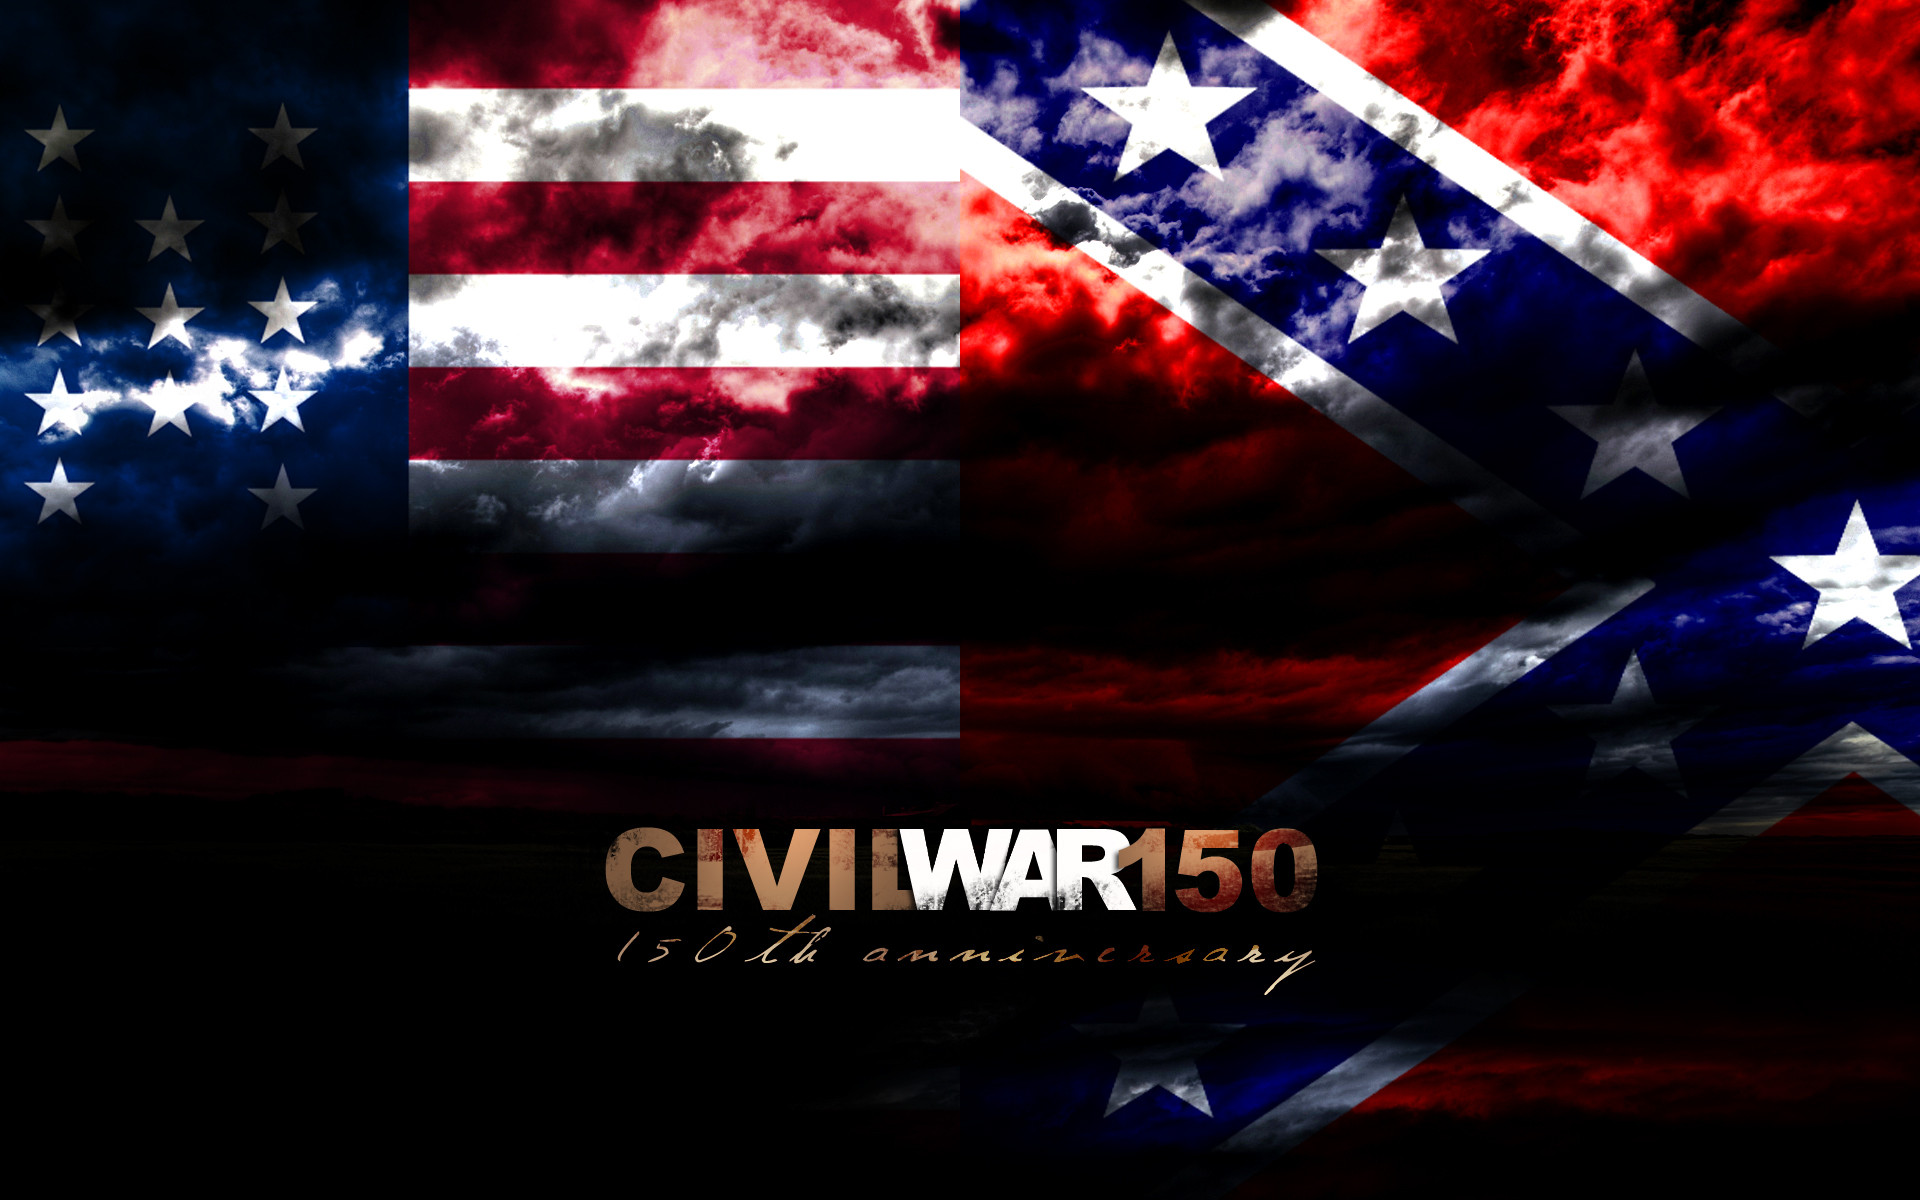 Wallpaper For Gt American Civil War